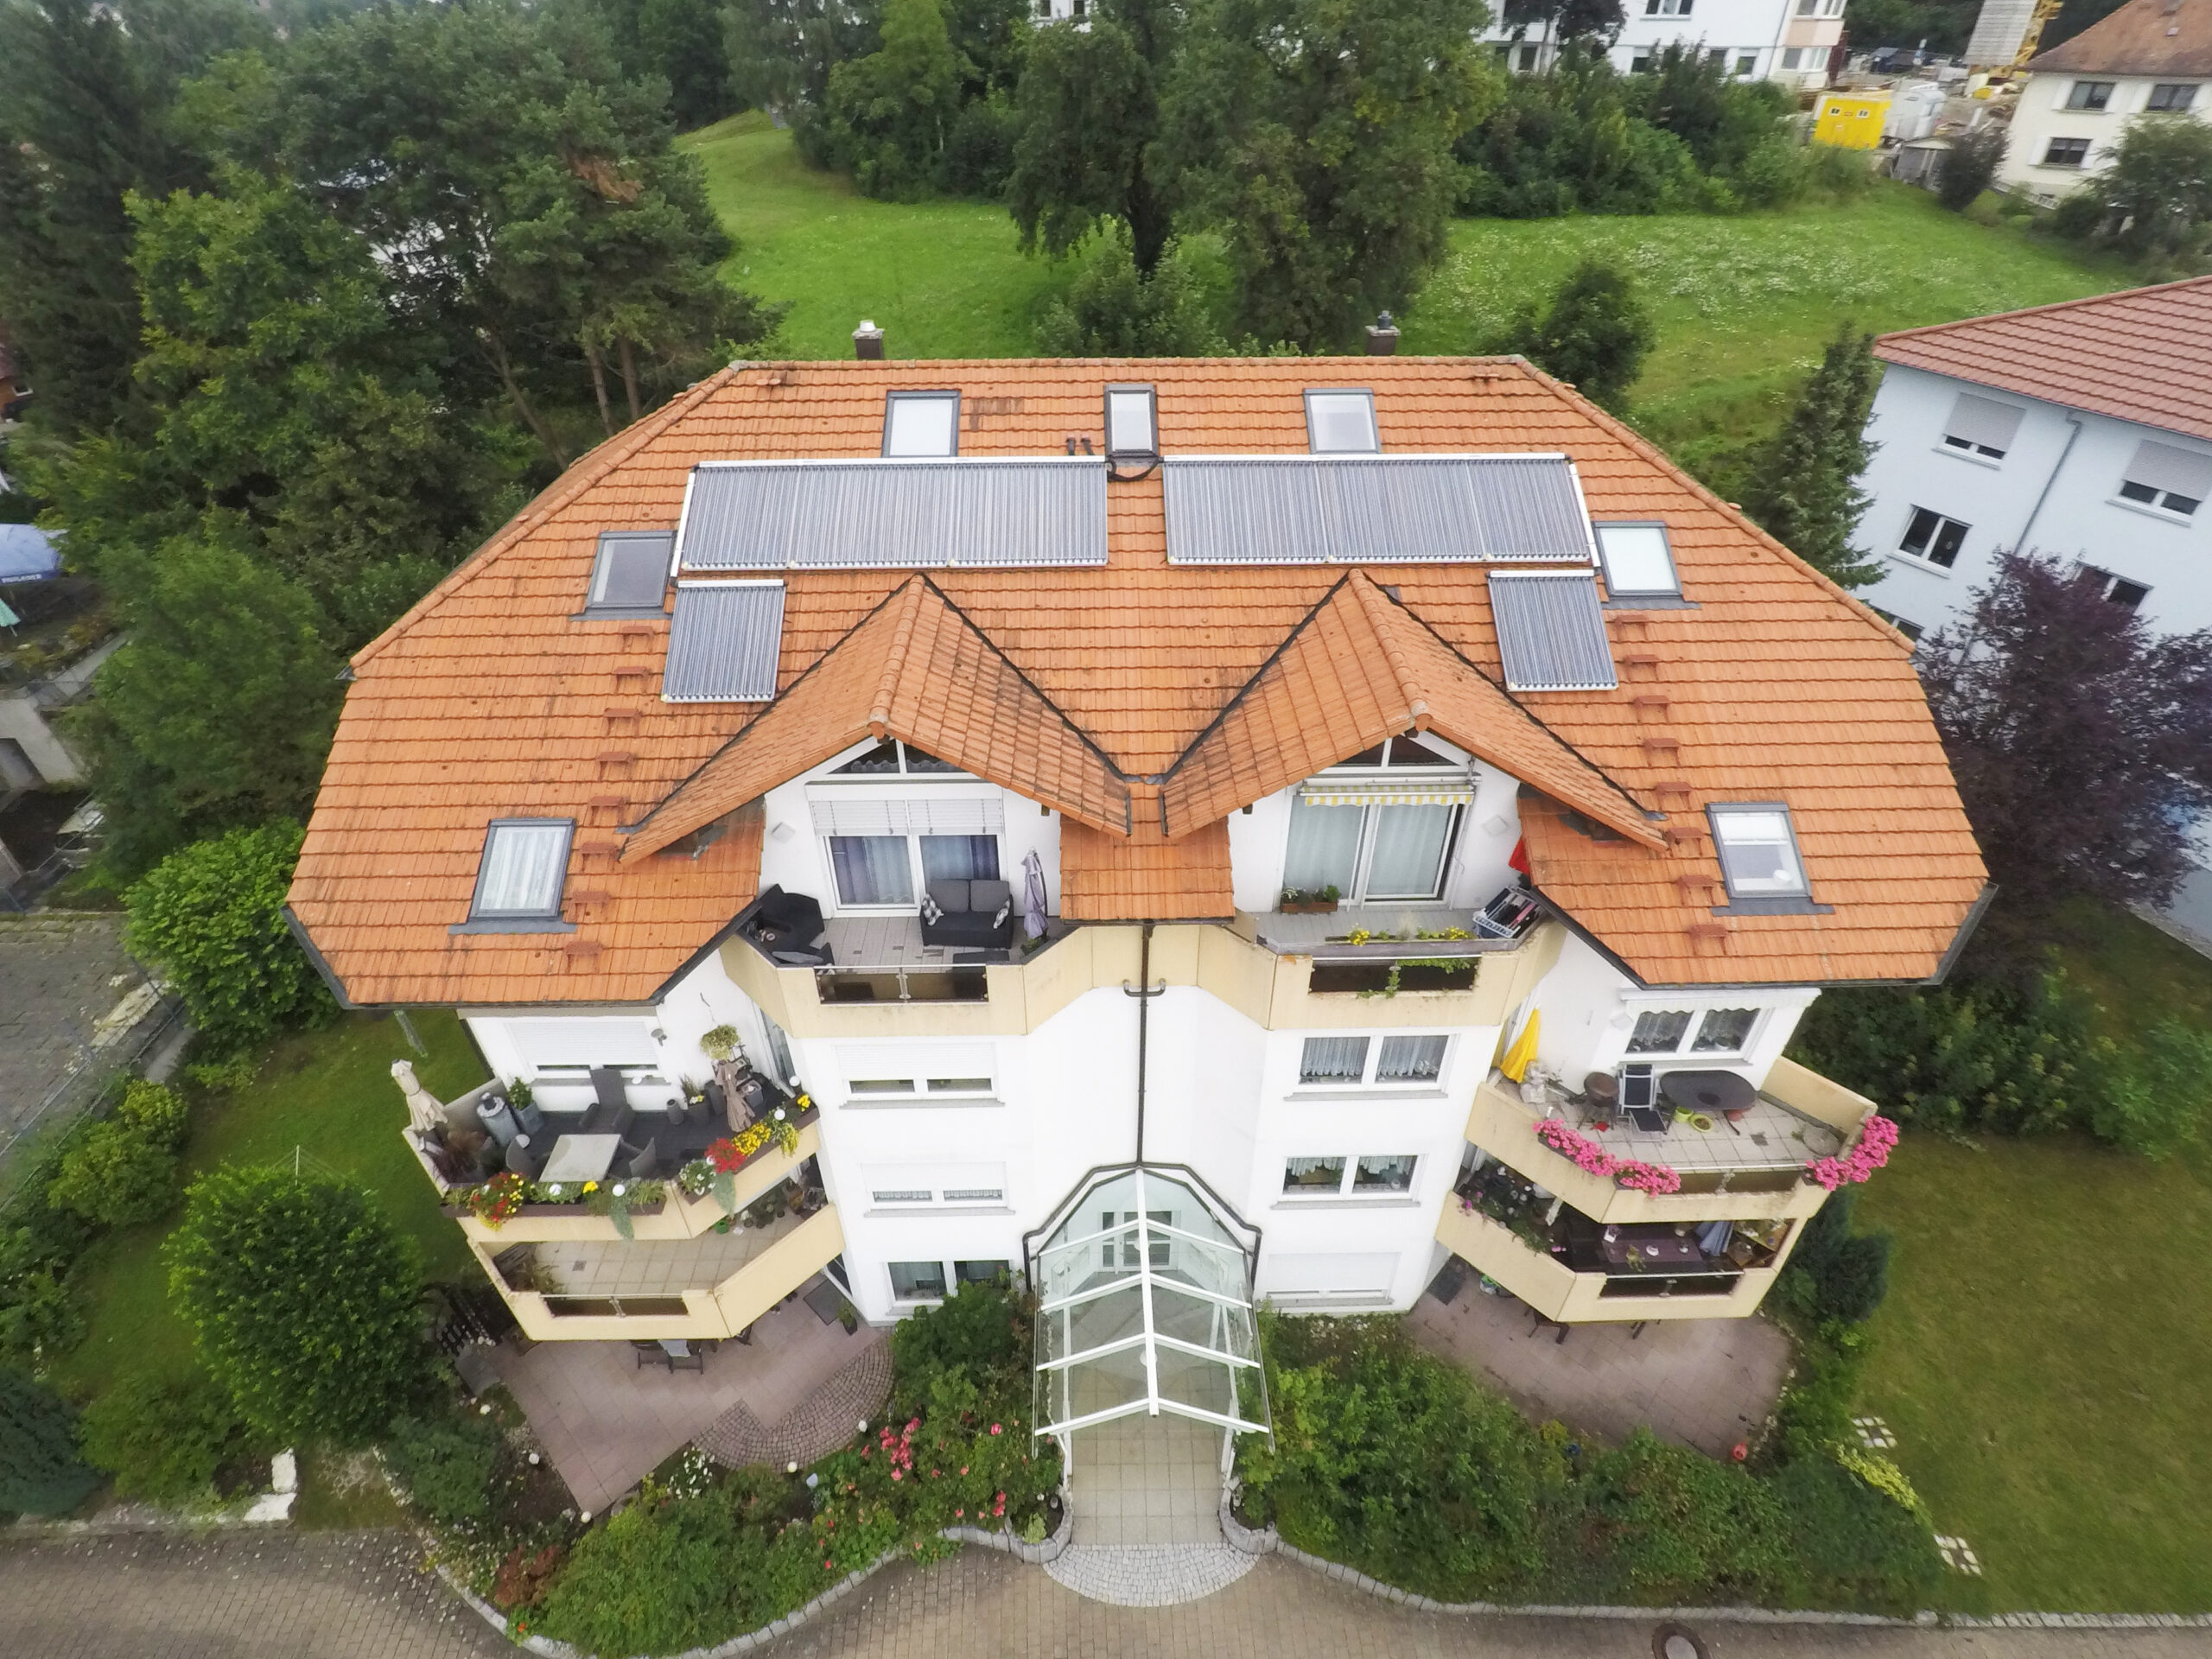 Projekt des Monats Zehnfamilienhaus Gas plus Solar